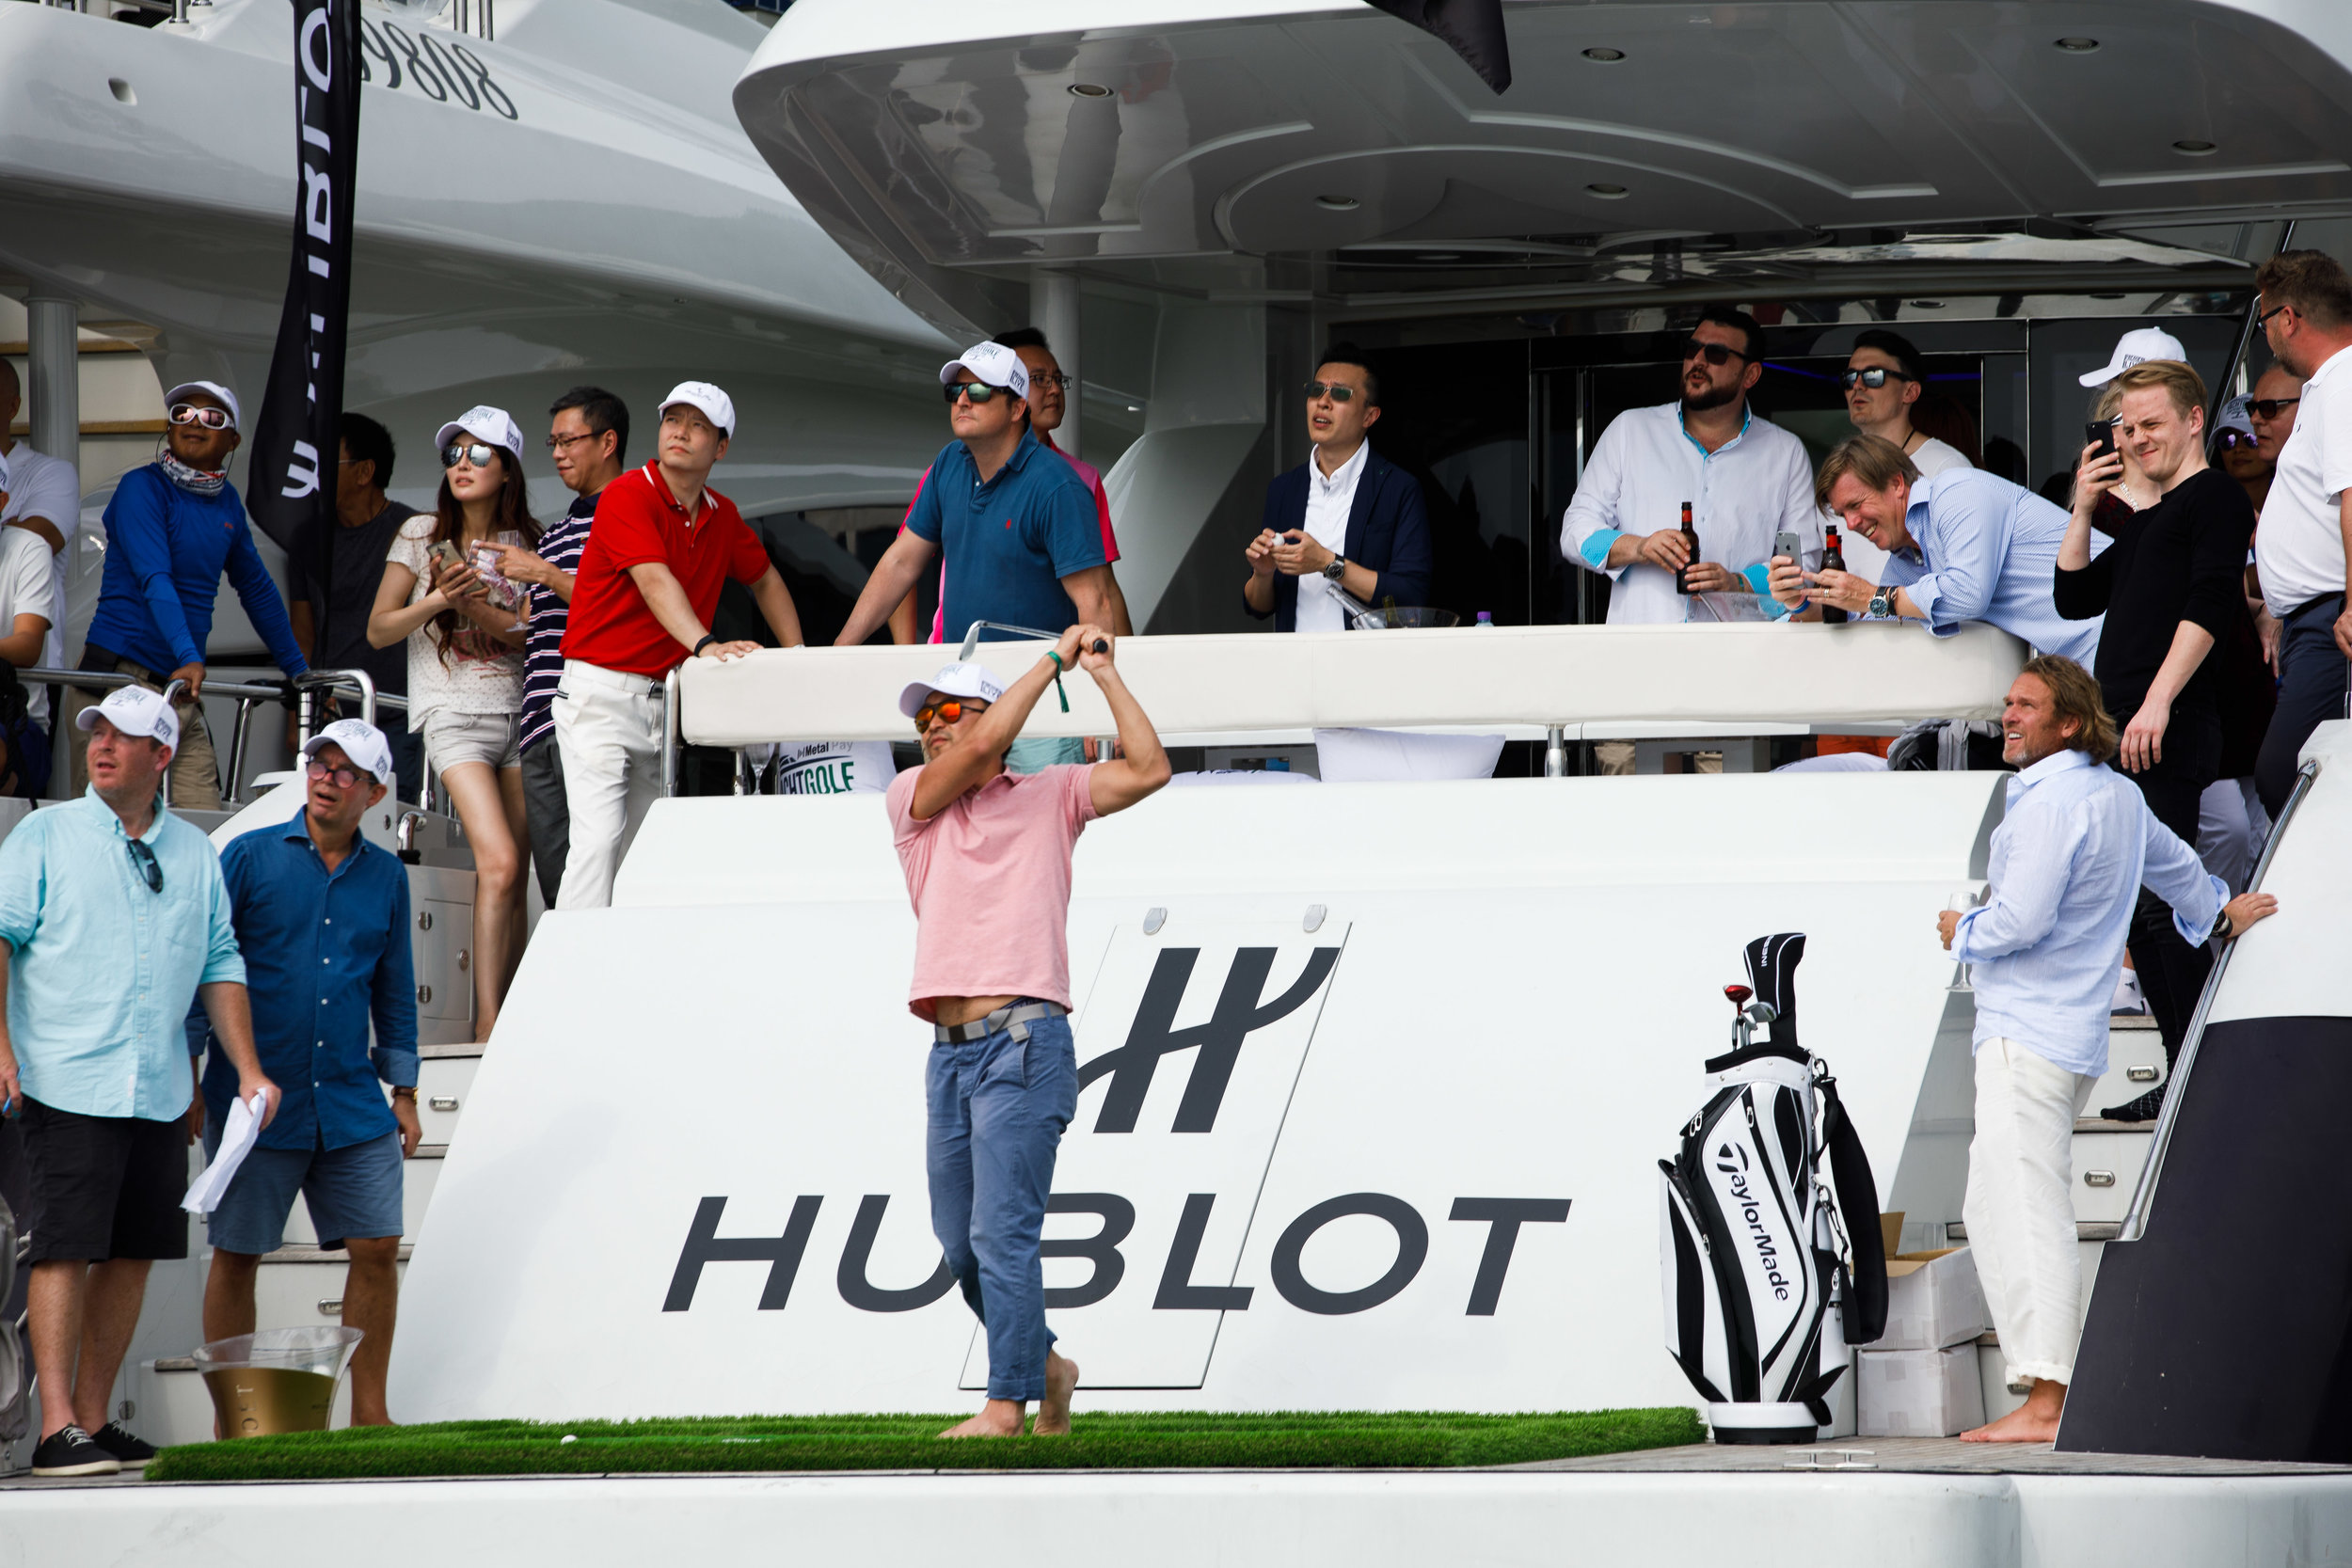 Hublot. Yacht Golf Event. Hong Kong